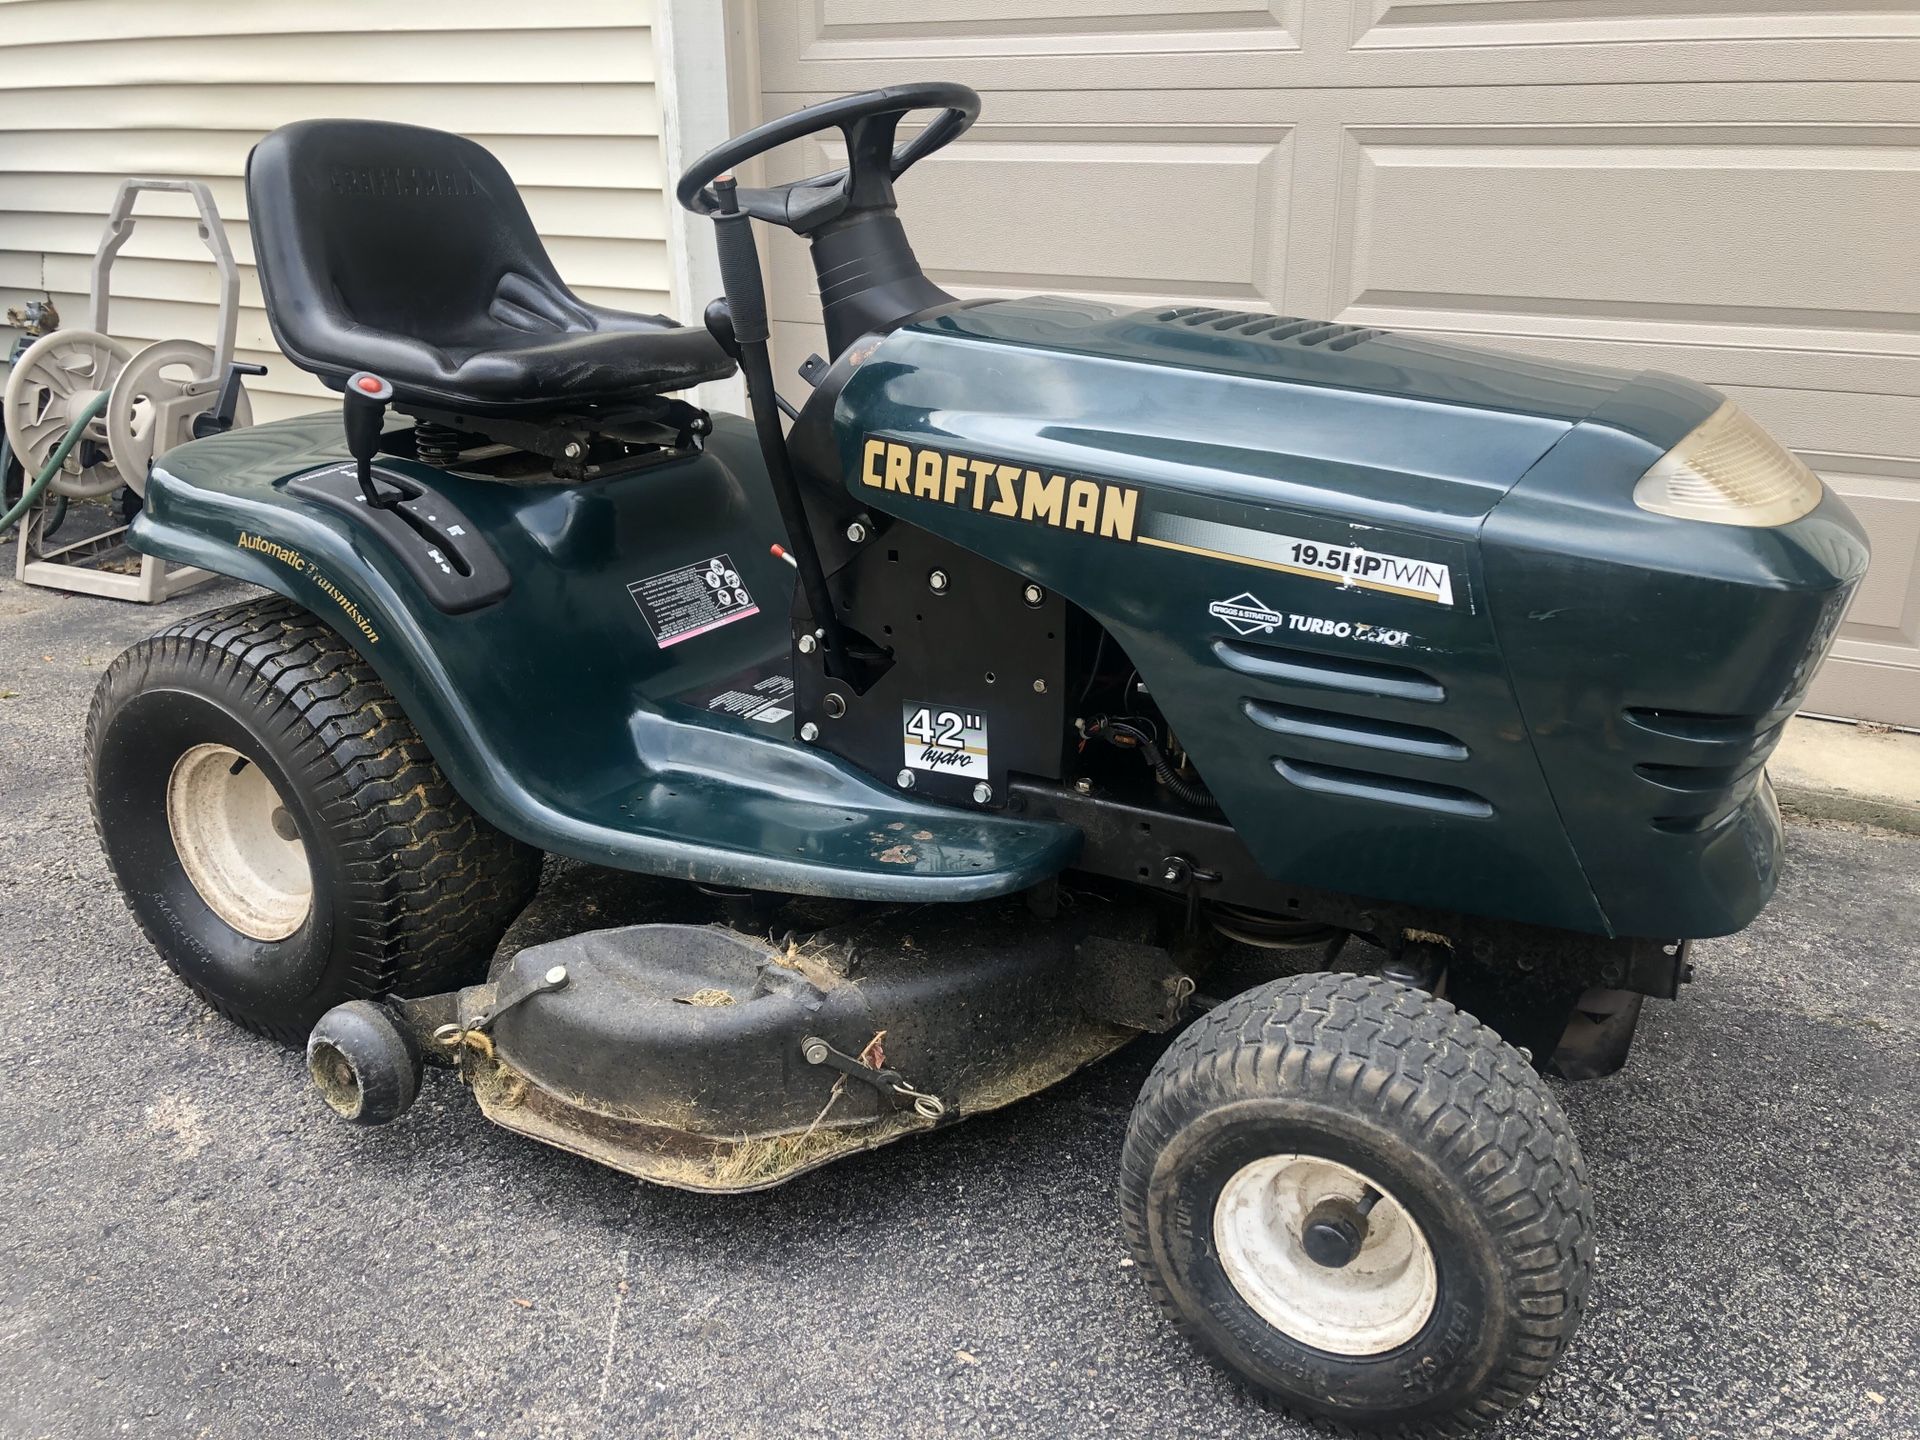 Craftsman 42” riding lawn mower!